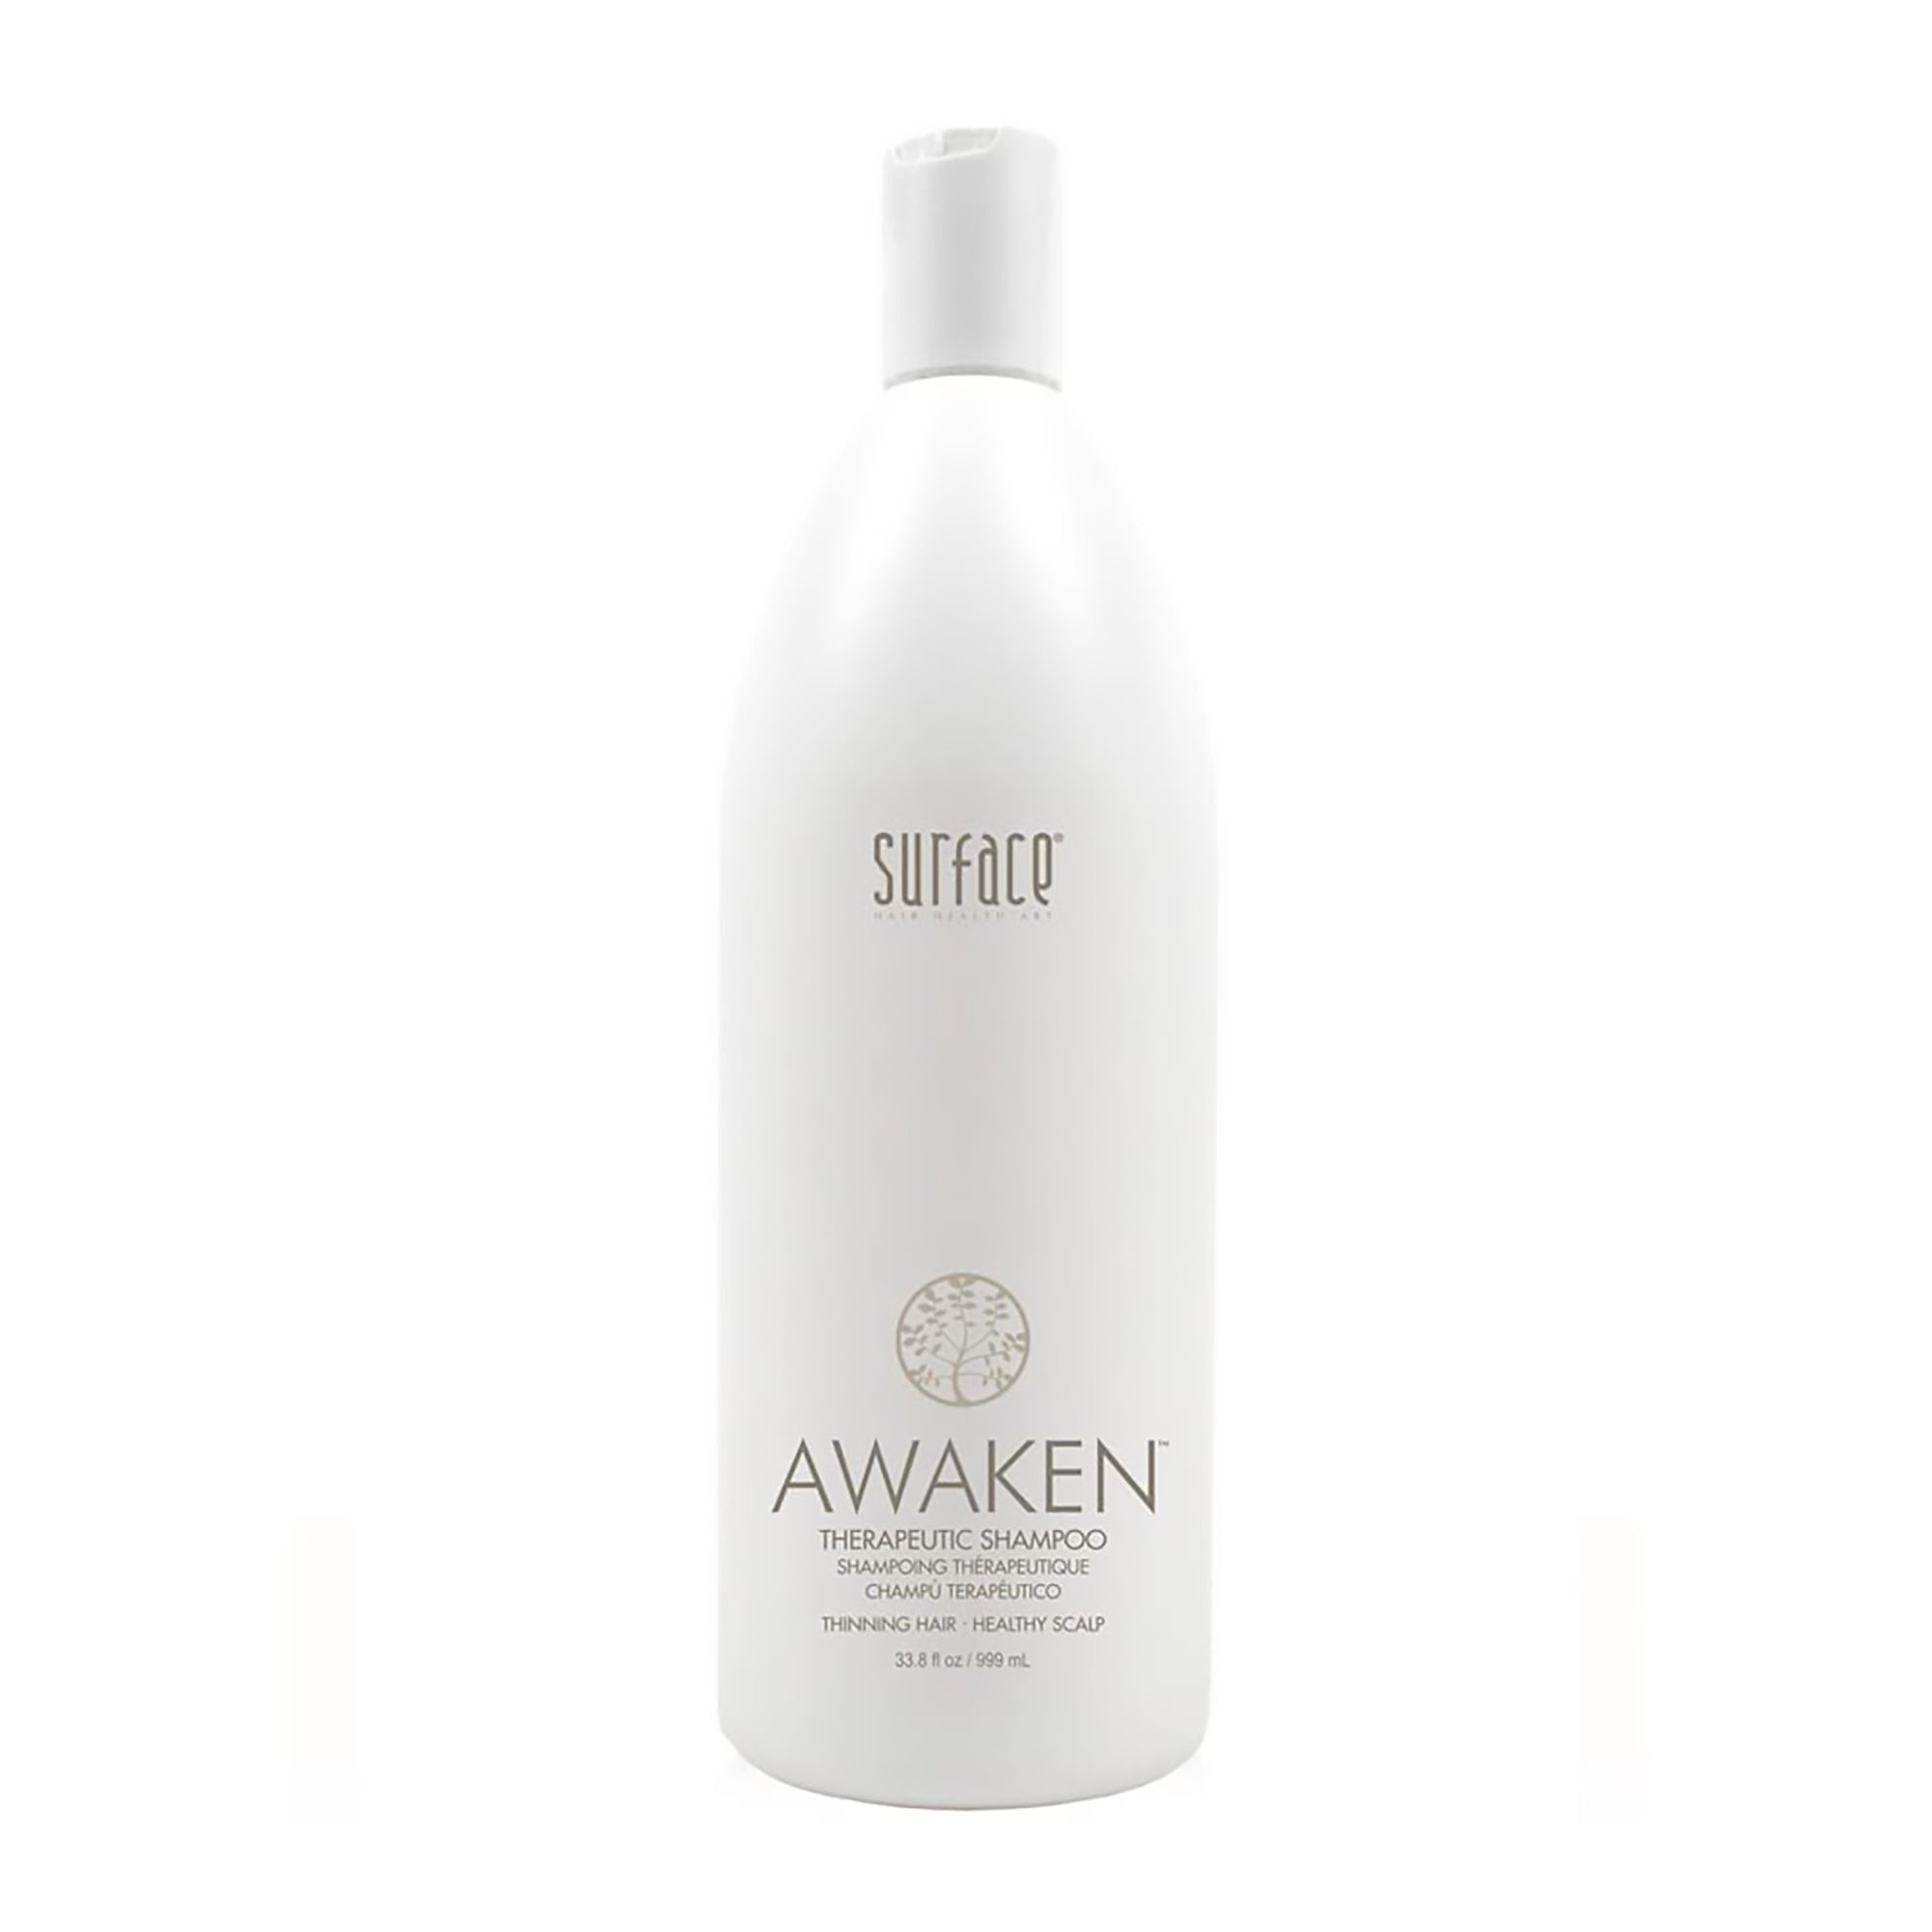 Surface Awaken Therapeutic Shampoo / 33OZ